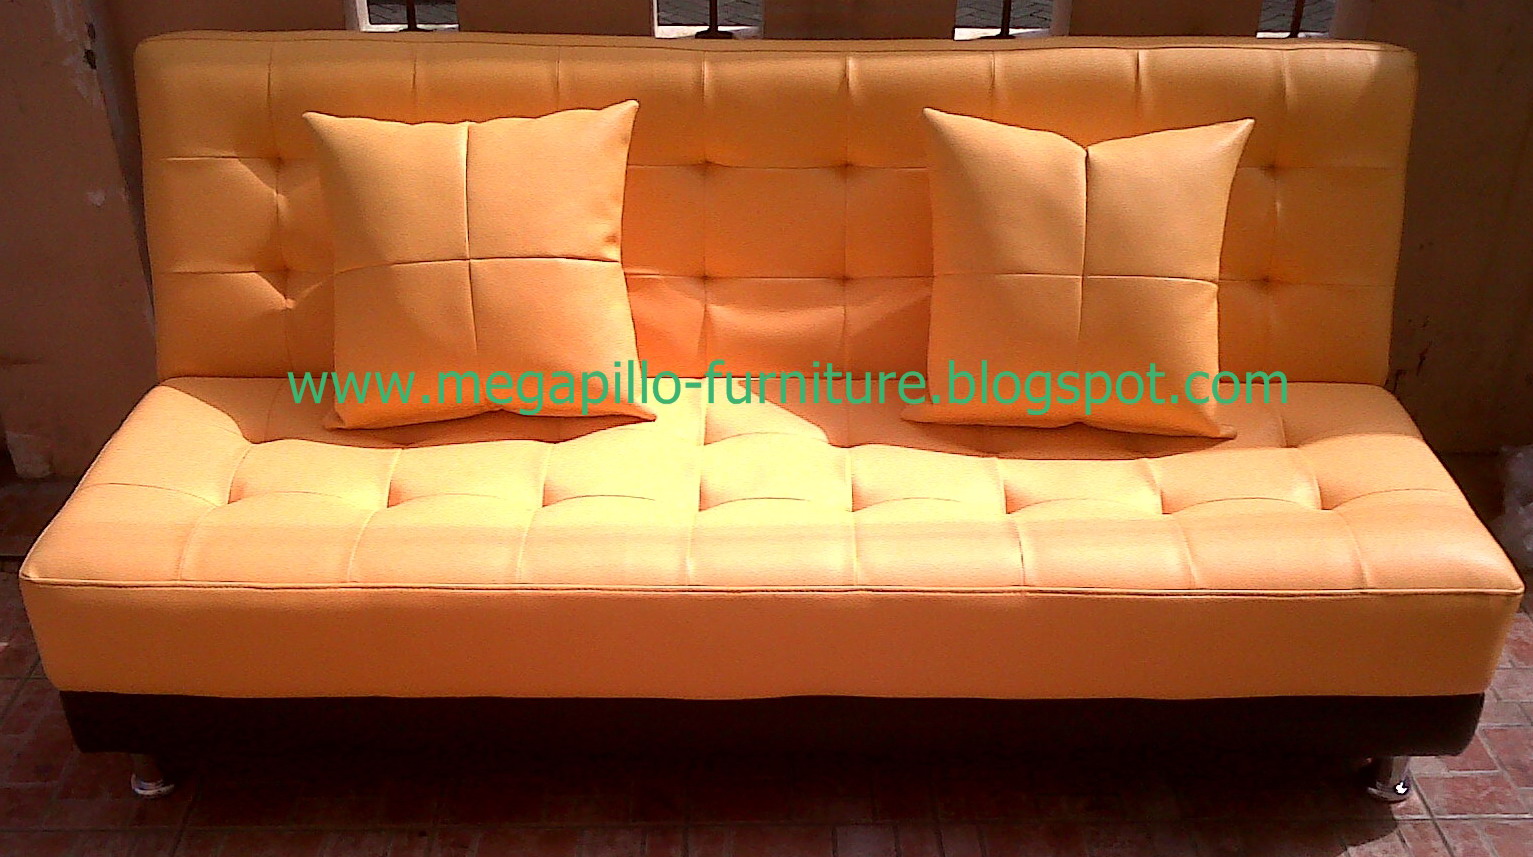 Megapillo Furniture Spring Bed Online Shop Sofa Bed Lipat